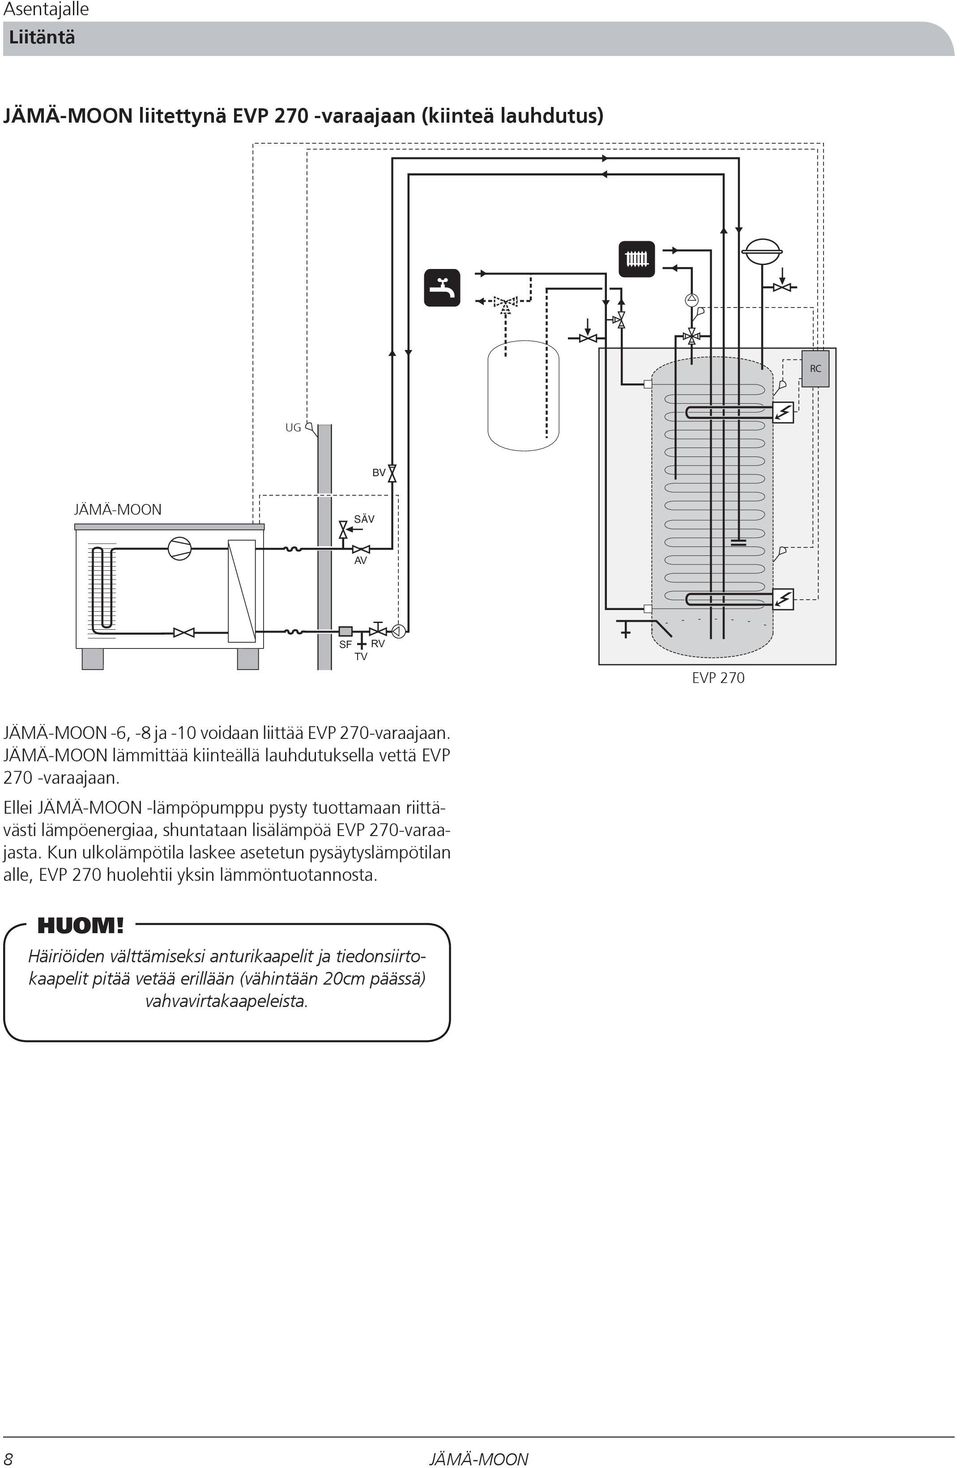 Ellei -lämpöpumppu pysty tuottamaan riittävästi lämpöenergiaa, shuntataan lisälämpöä EVP 270-varaajasta.